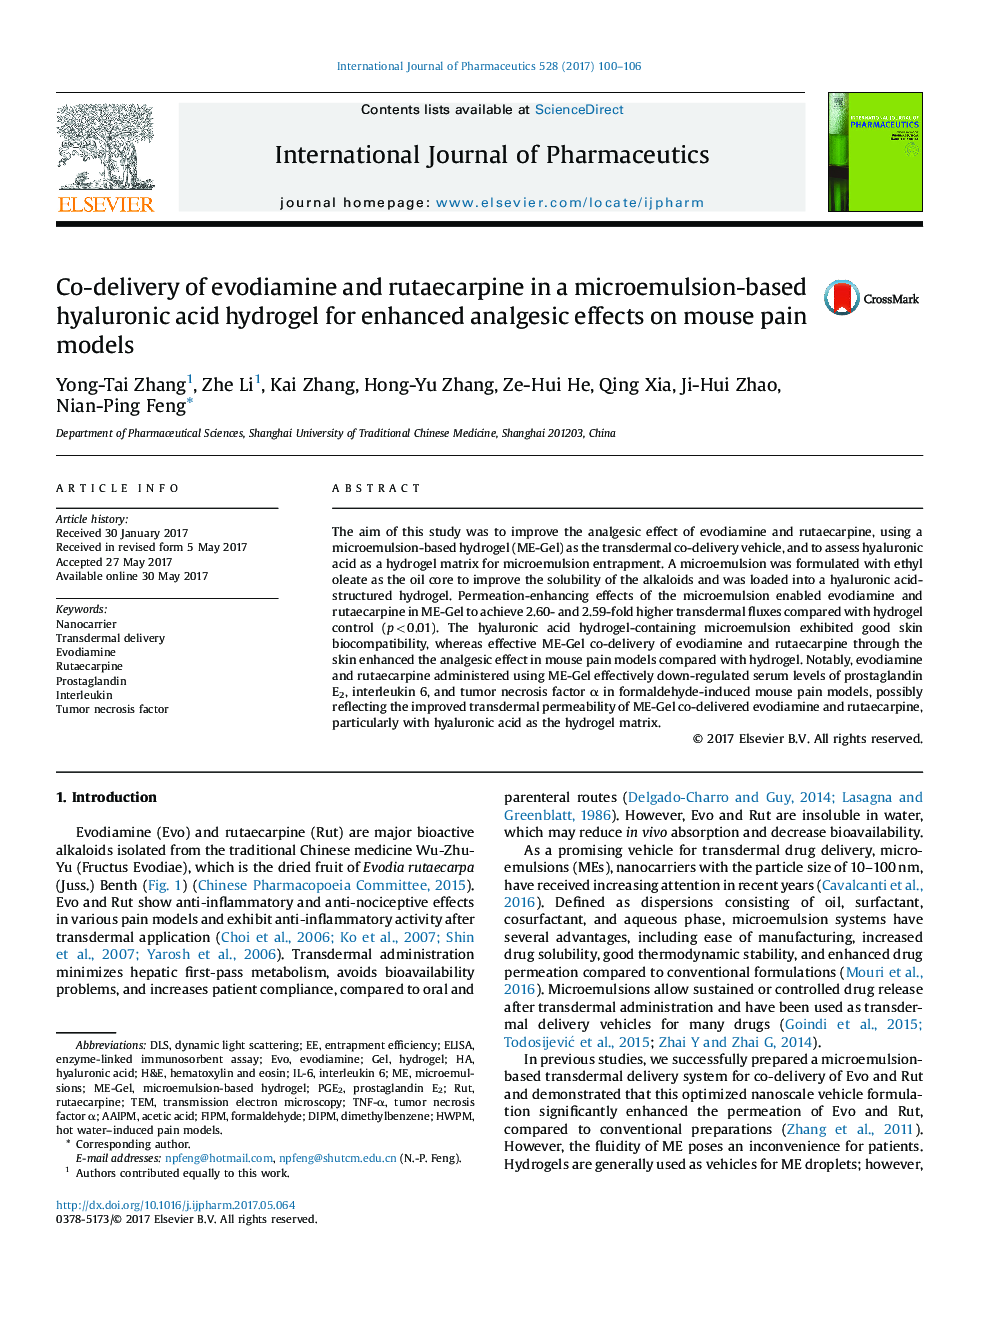 همودیالیز اوردوآمین و راتاکاربین در یک هیدروژل اسید هیالورونیک مبتنی بر میکرو امولسیون برای افزایش اثرات ضد درد در مدل درد 